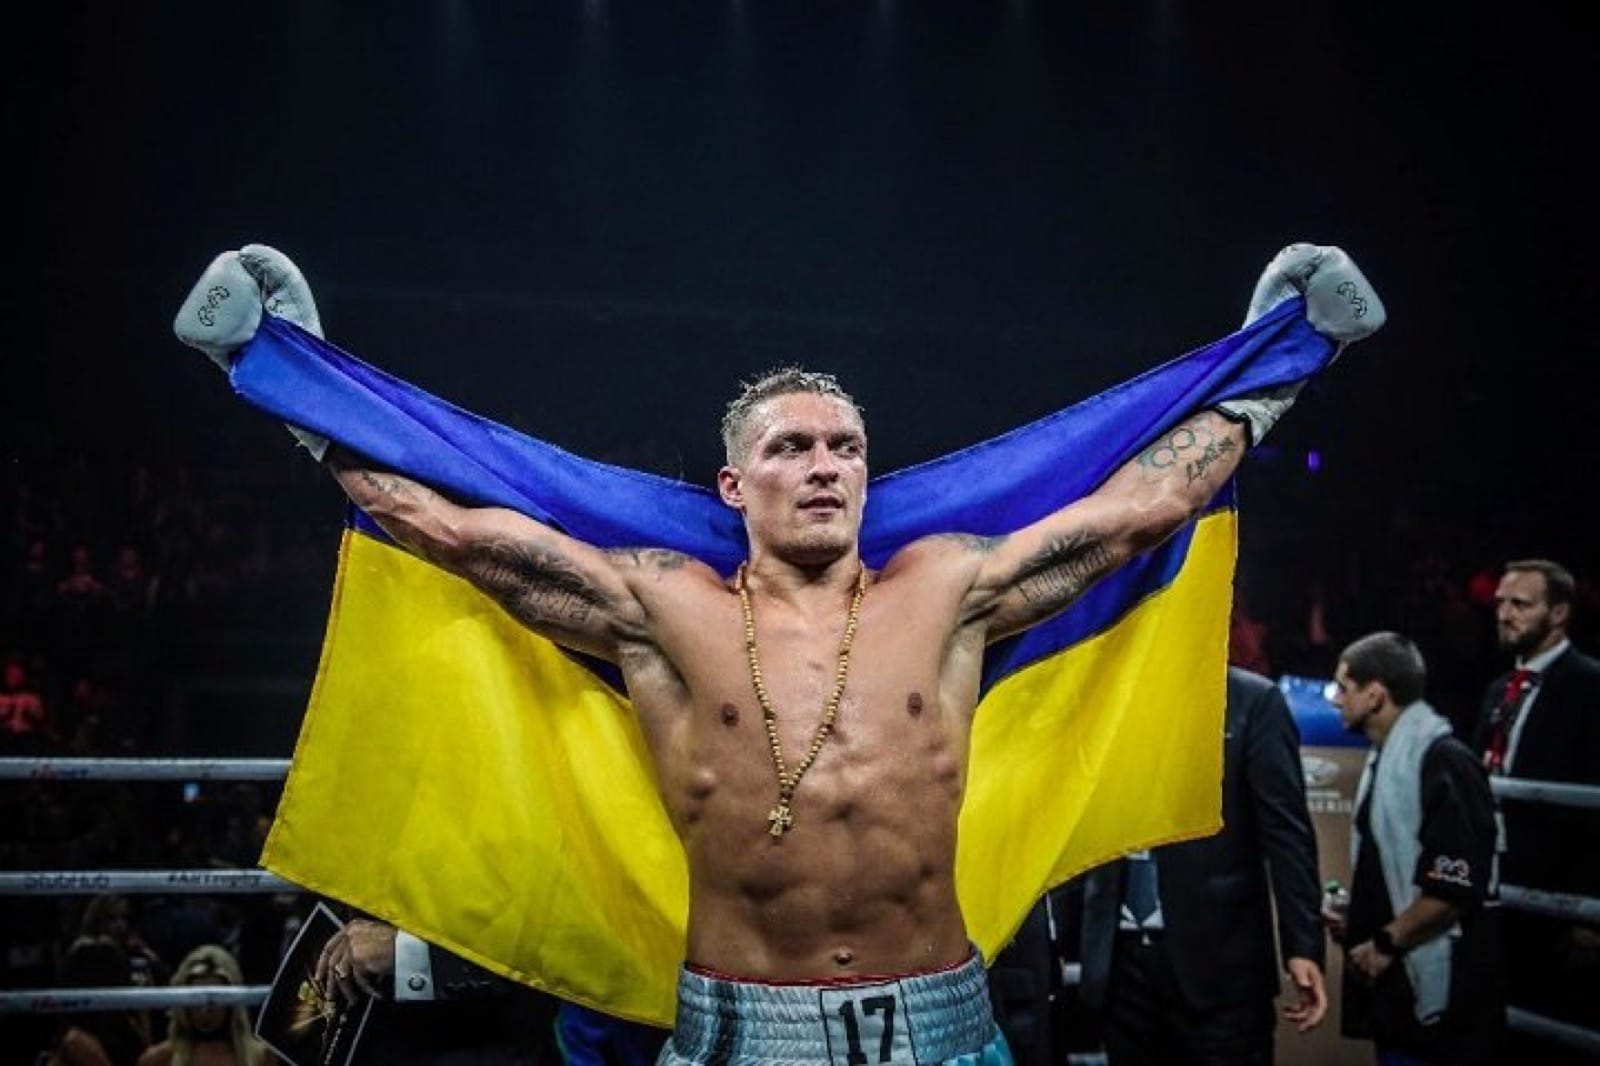 Alexander Usyk, Anthony Joshua boxing photo and news image